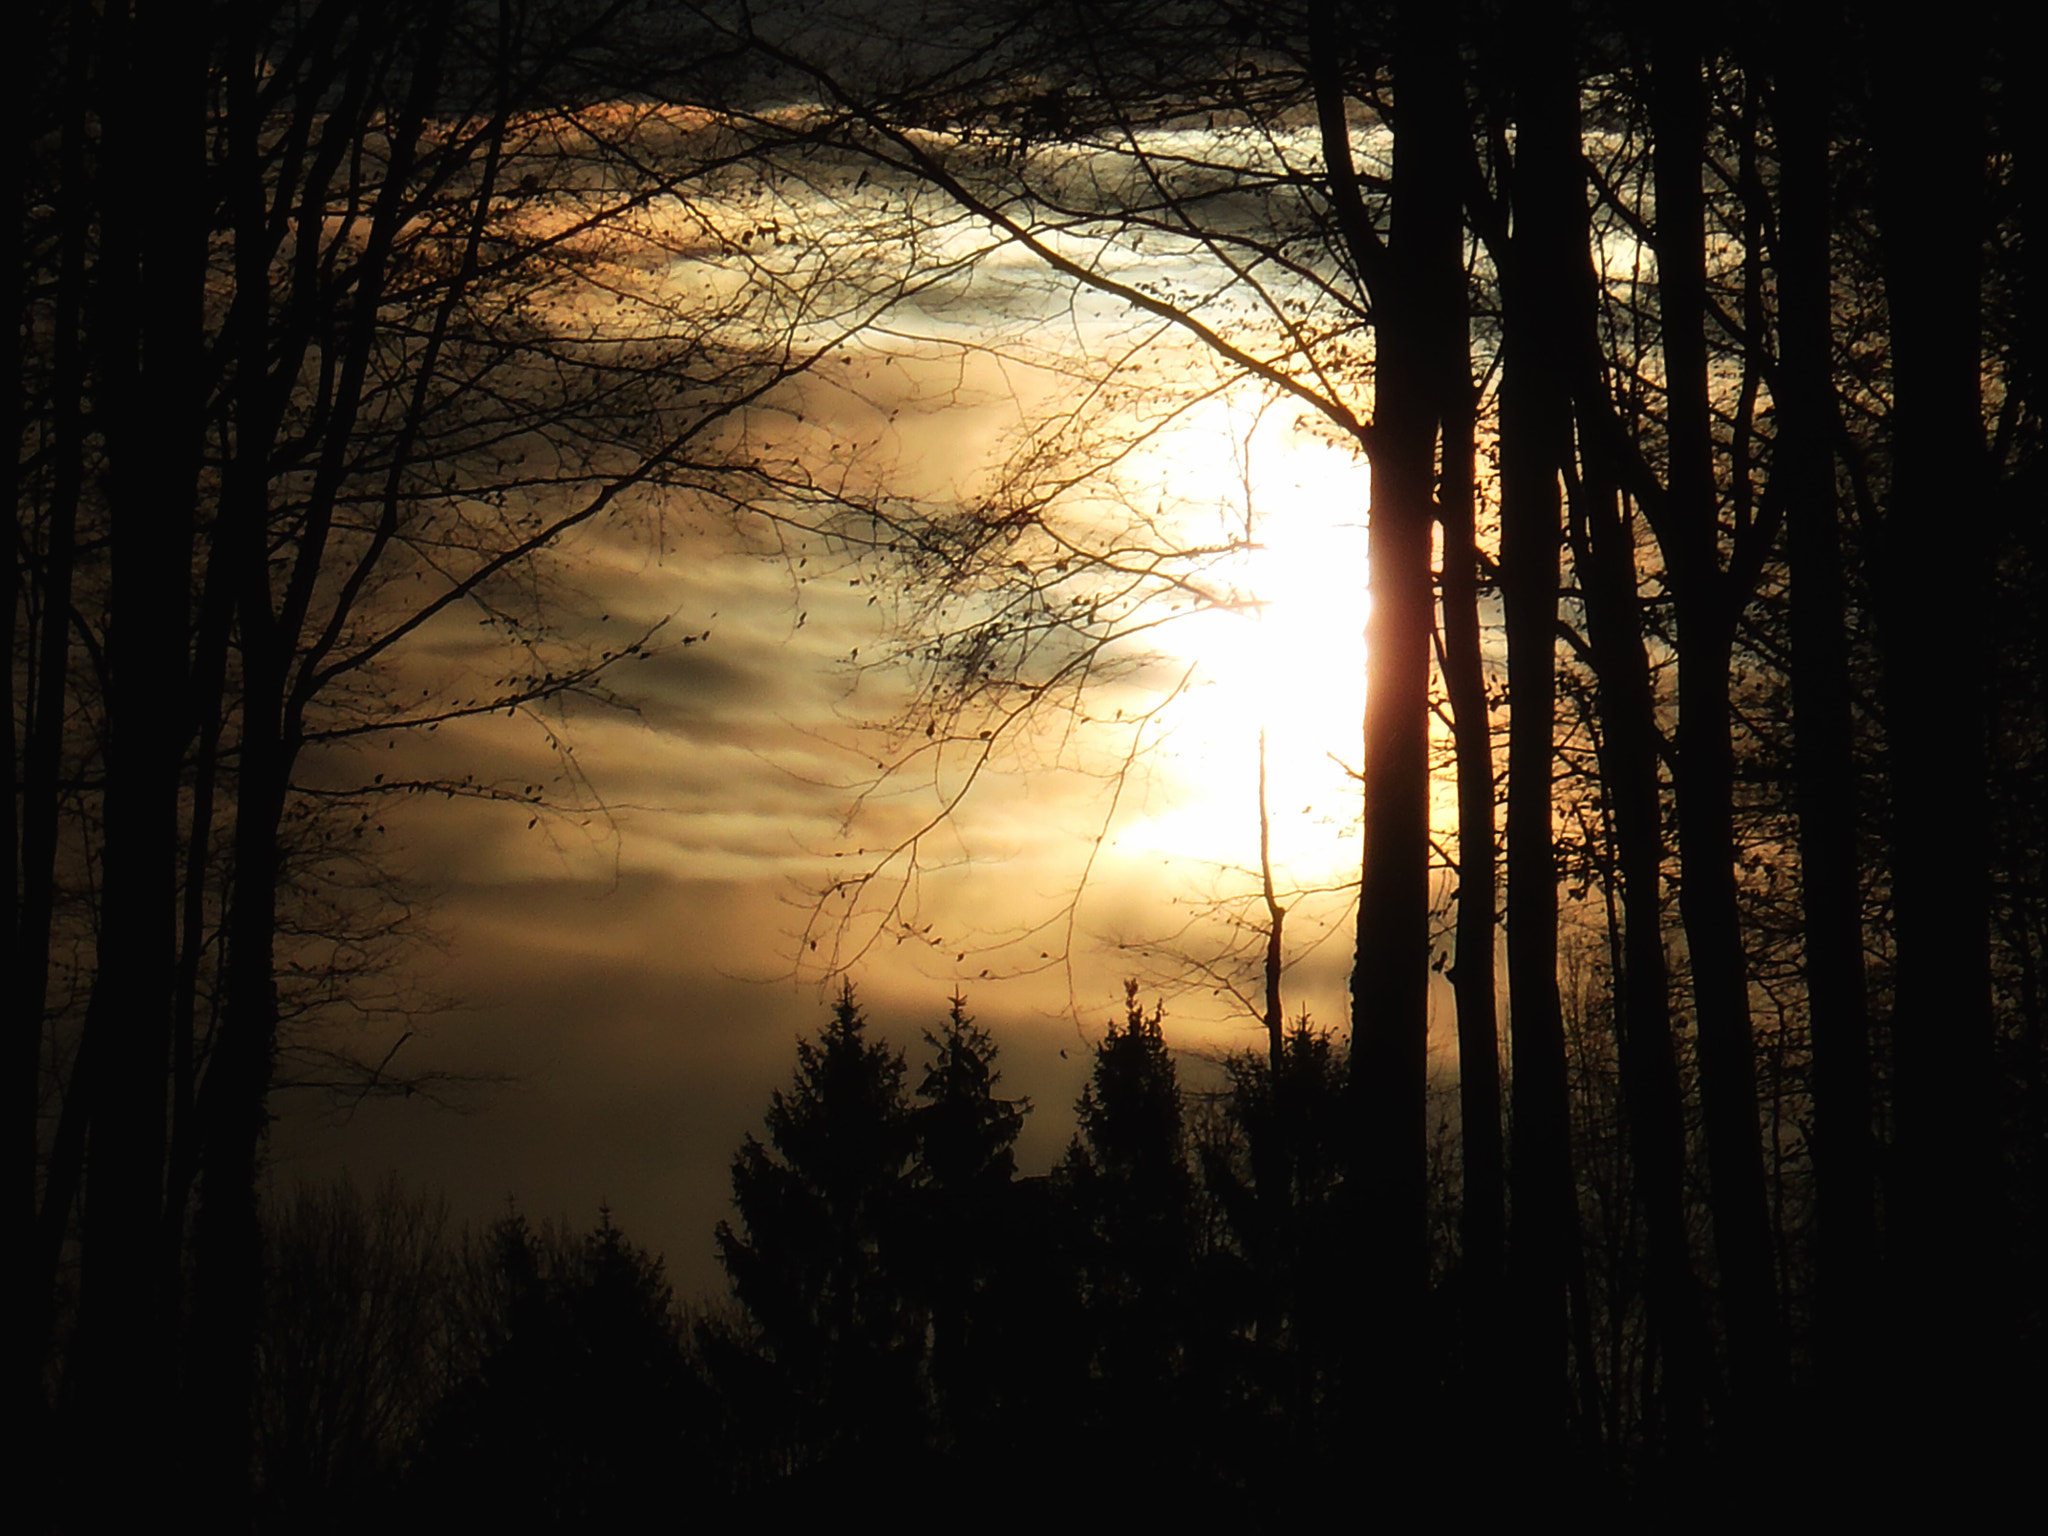 Olympus StylusTough-6020 sample photo. Cloudy sunrise photography